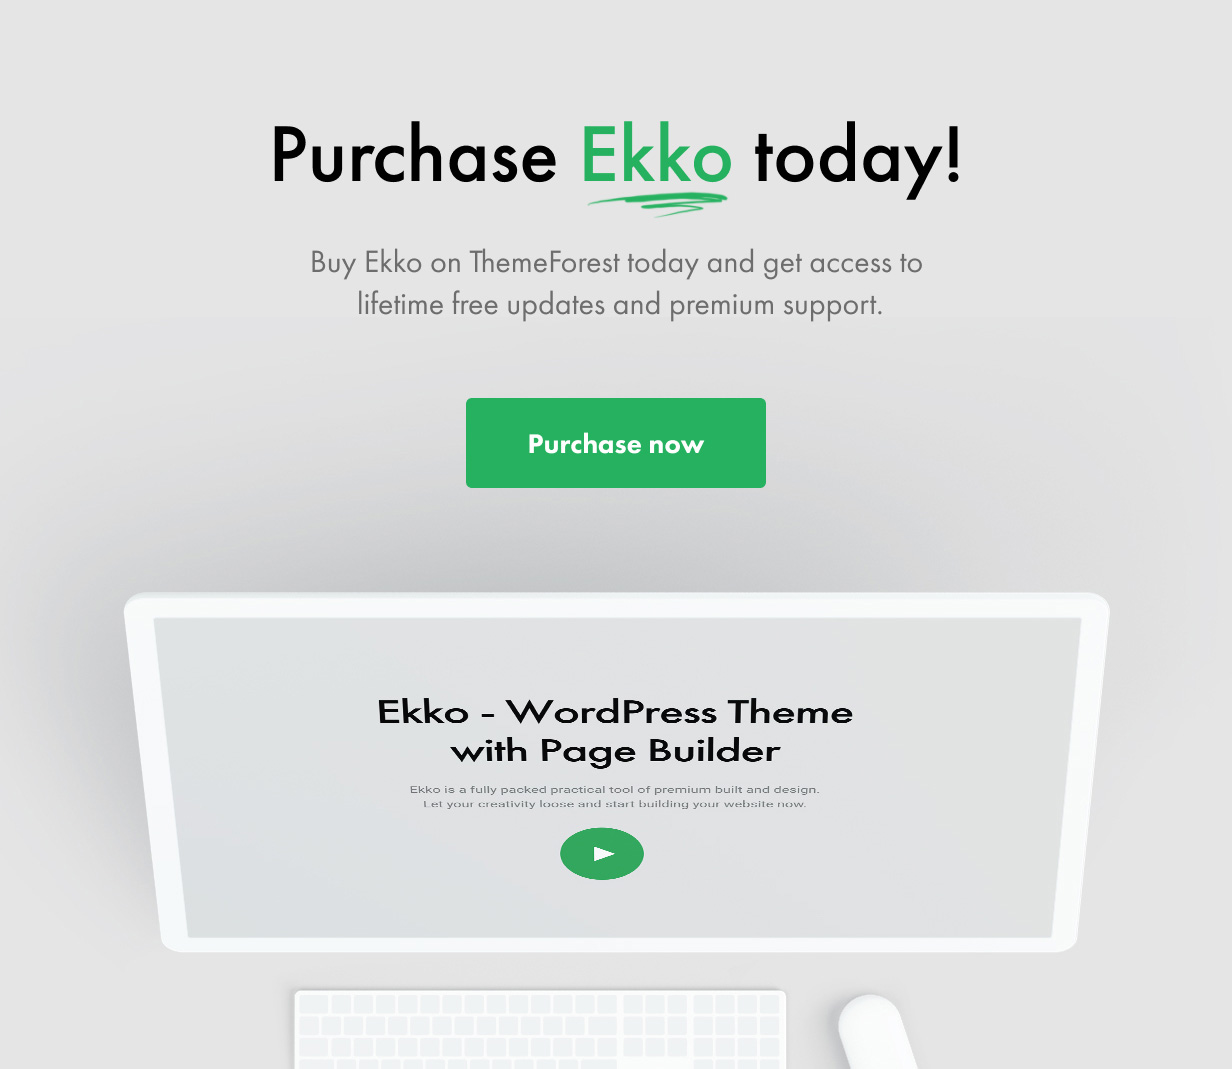 18 - Ekko - Multi-Purpose WordPress Theme with Page Builder